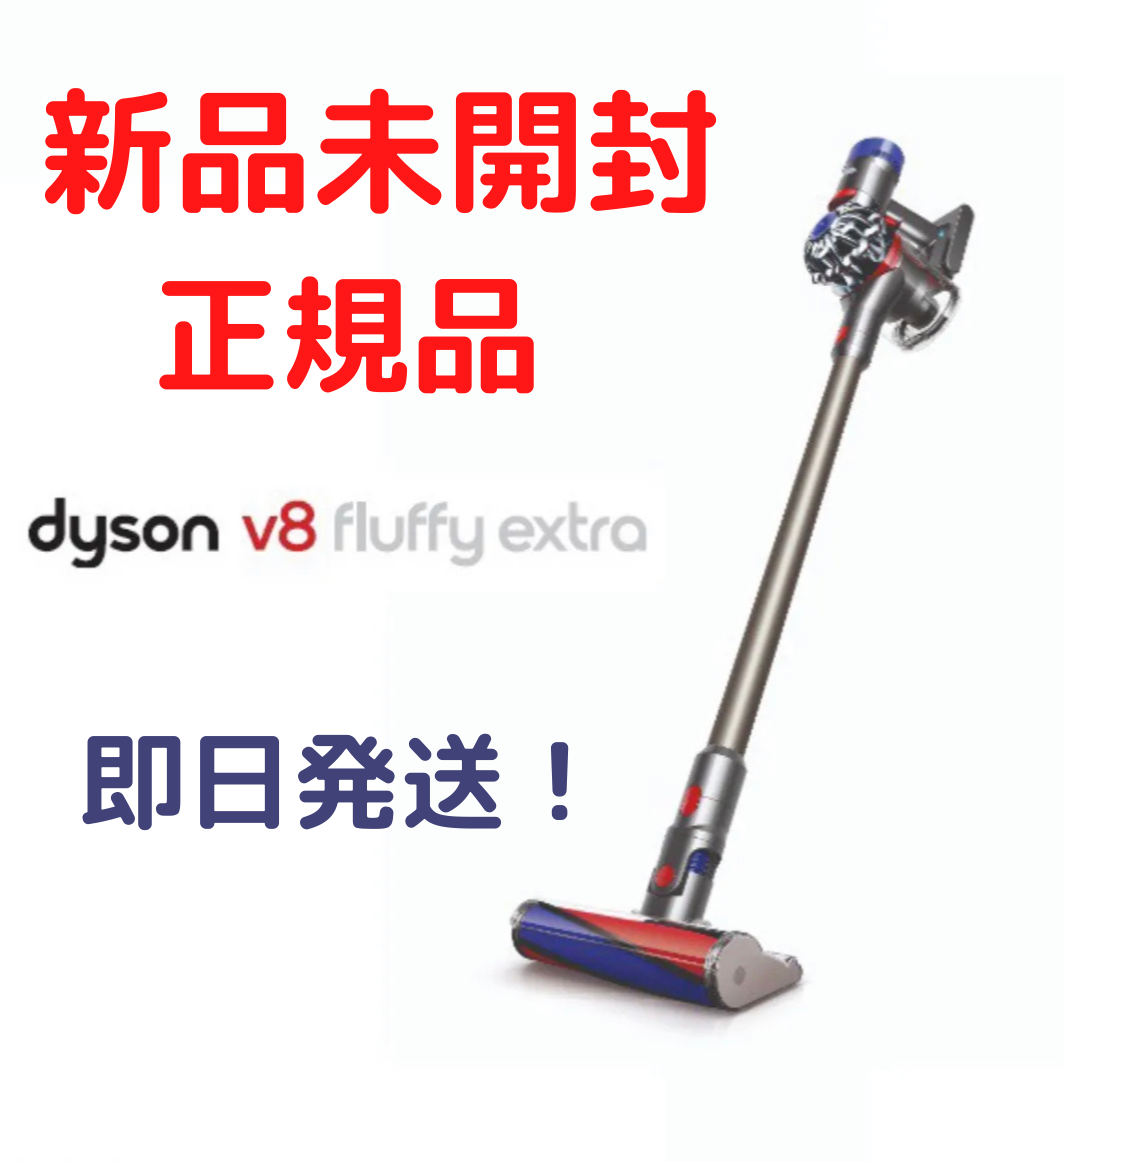 新品/未開封品 ダイソン V8 Fluffy Extra SV10 TI-